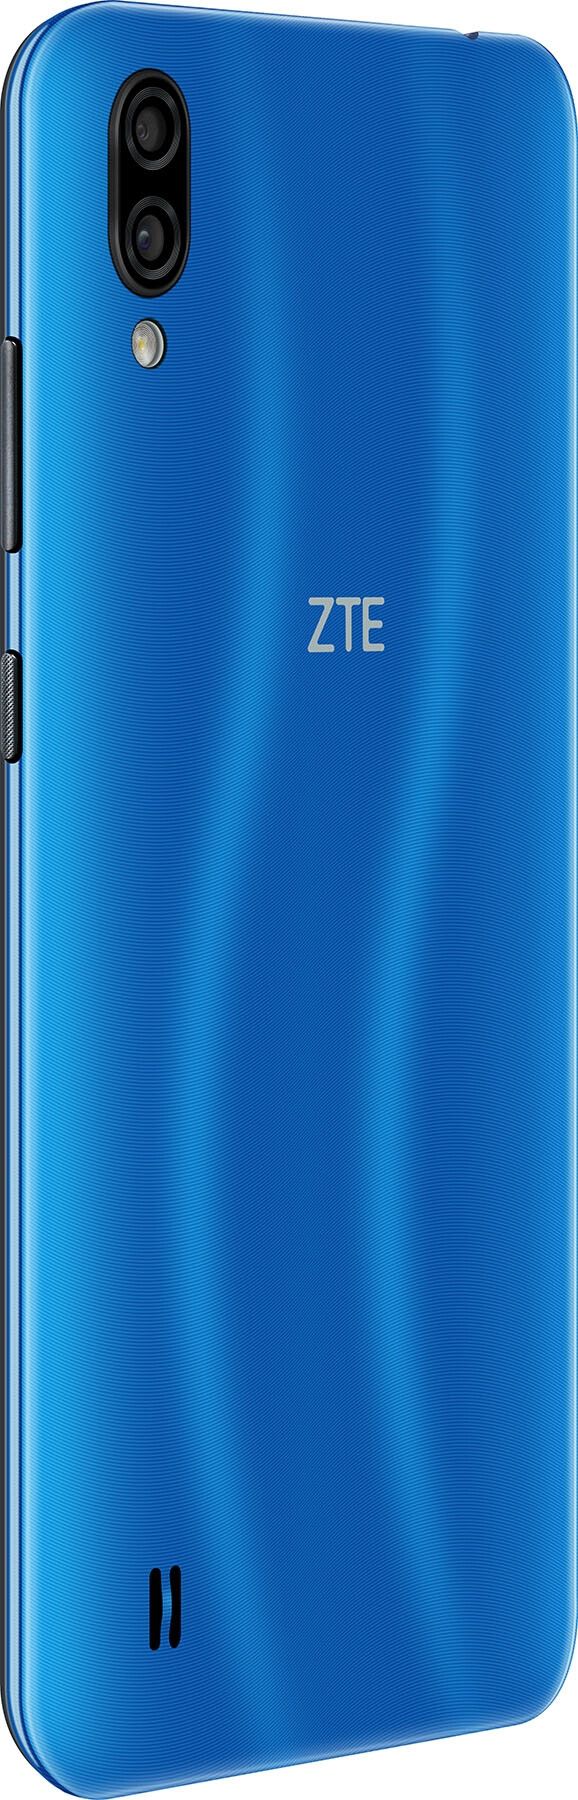 Акція на Смартфон ZTE Blade A5 2020 2/32GB Blue від Територія твоєї техніки - 3